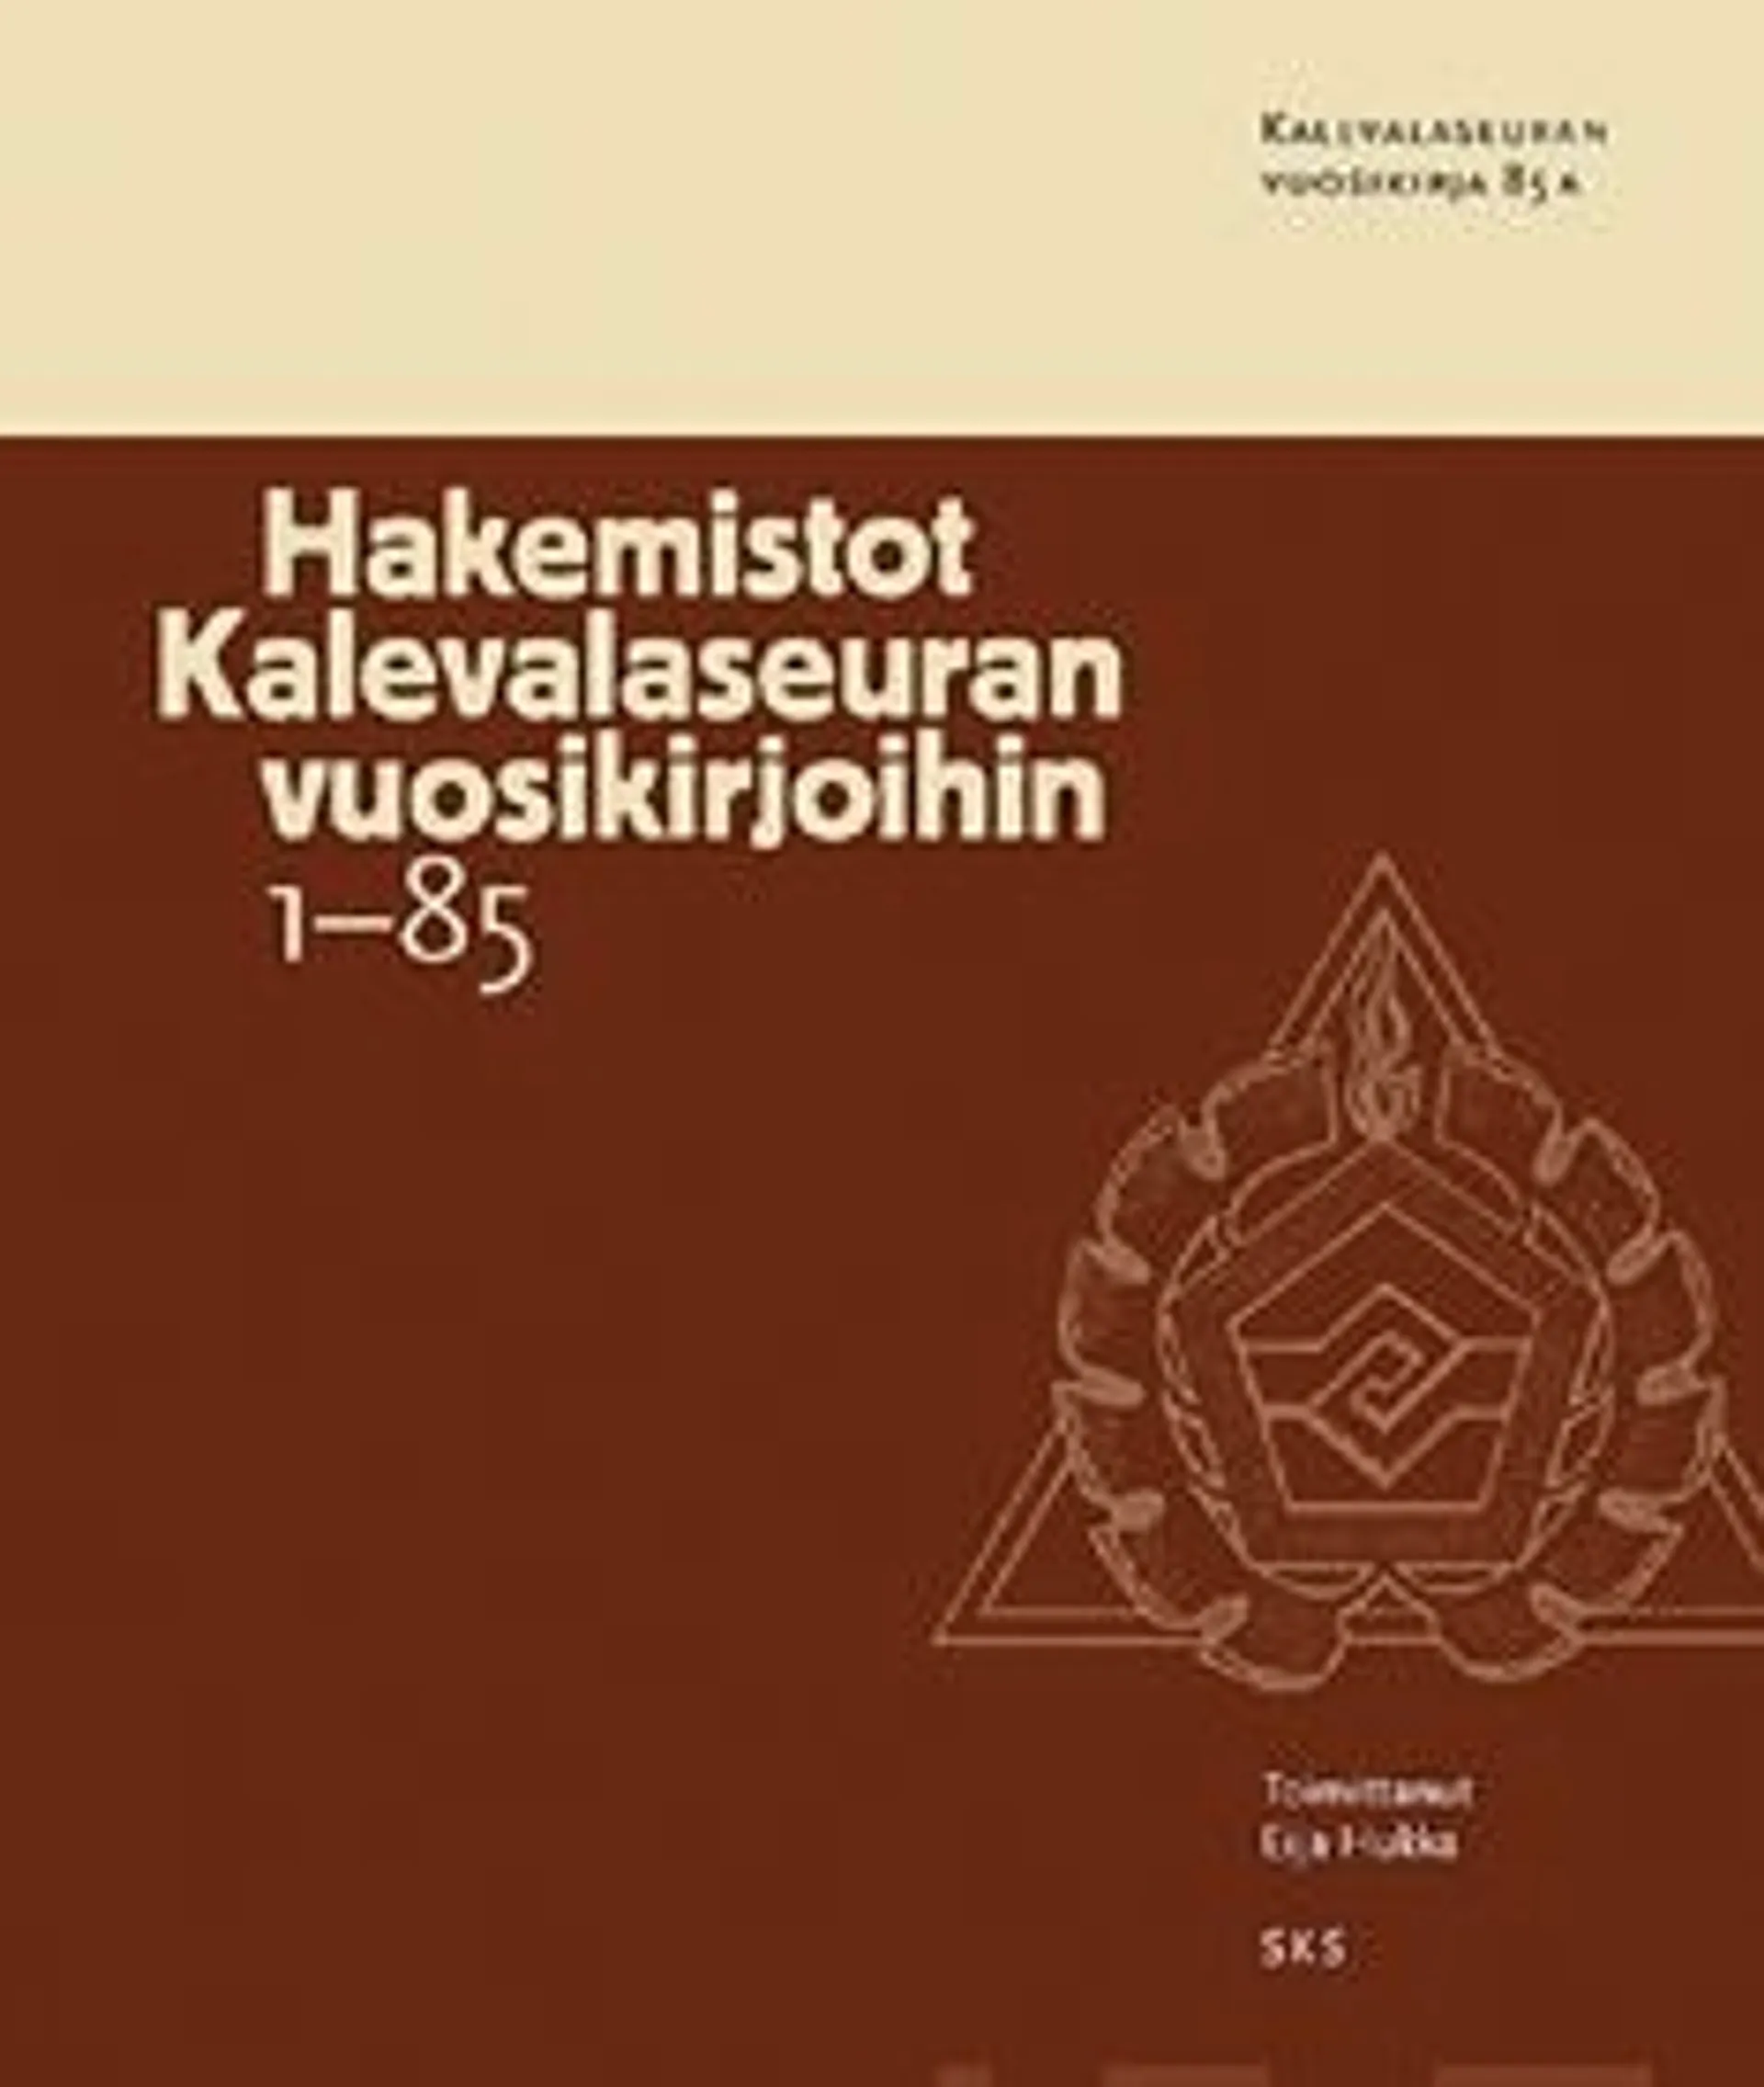 Hakemistot Kalevalaseuran vuosikirjoihin 1-85